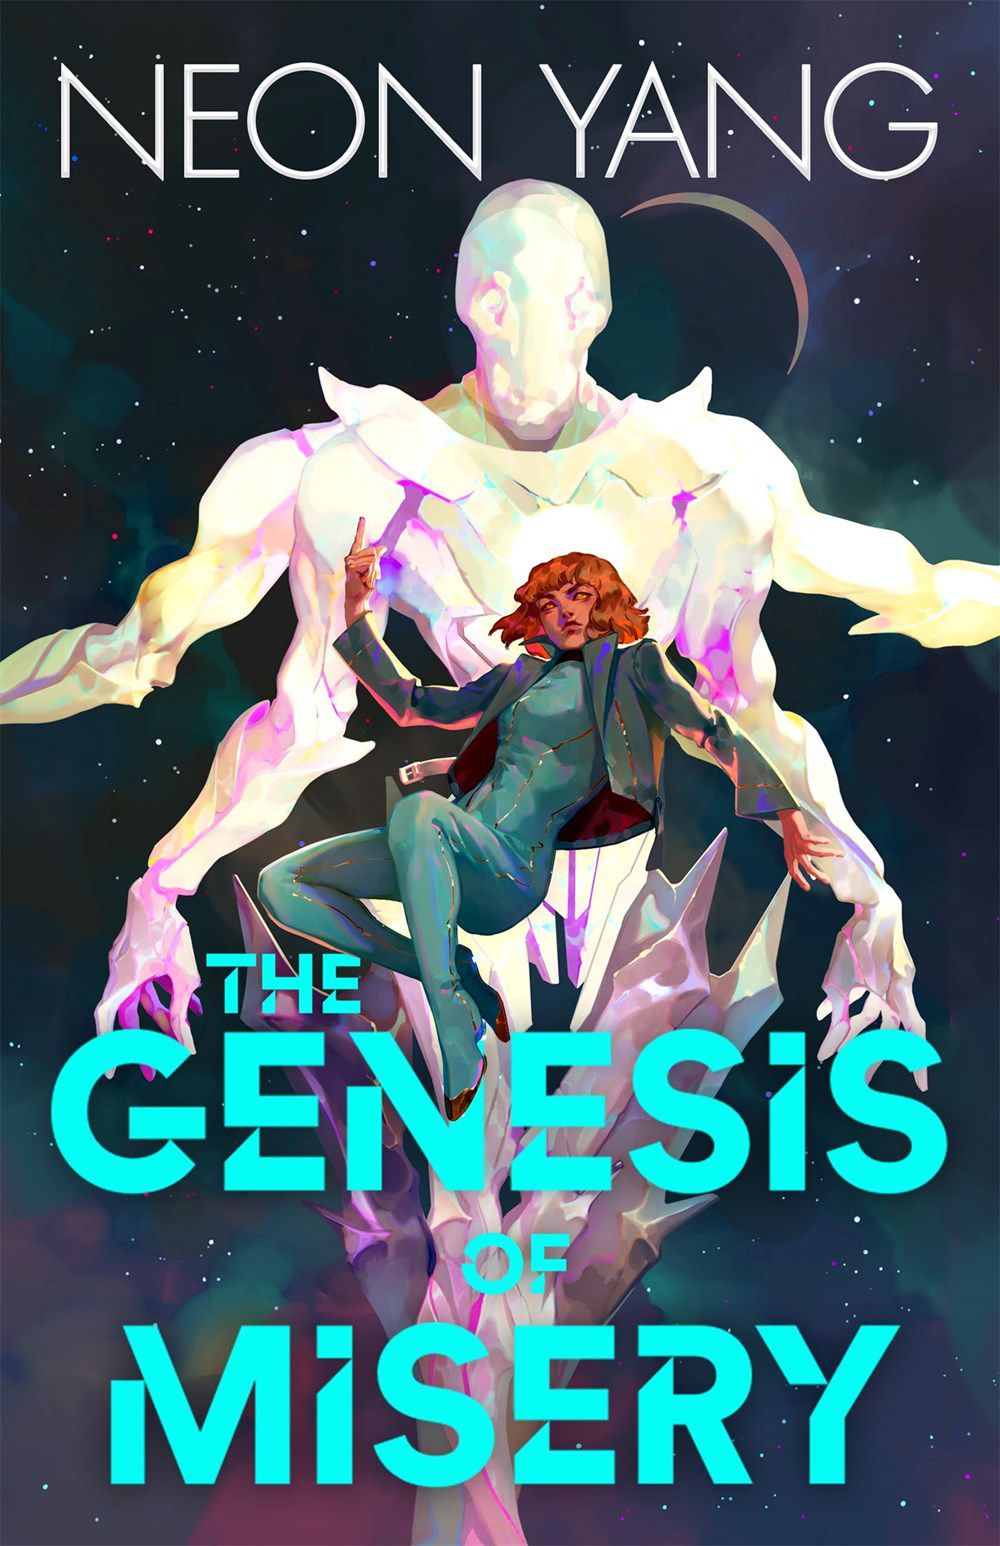 Immagine di copertina di The Gense of Misery di Neon Yang, con una figura umana posta di fronte a una figura aliena nello spazio